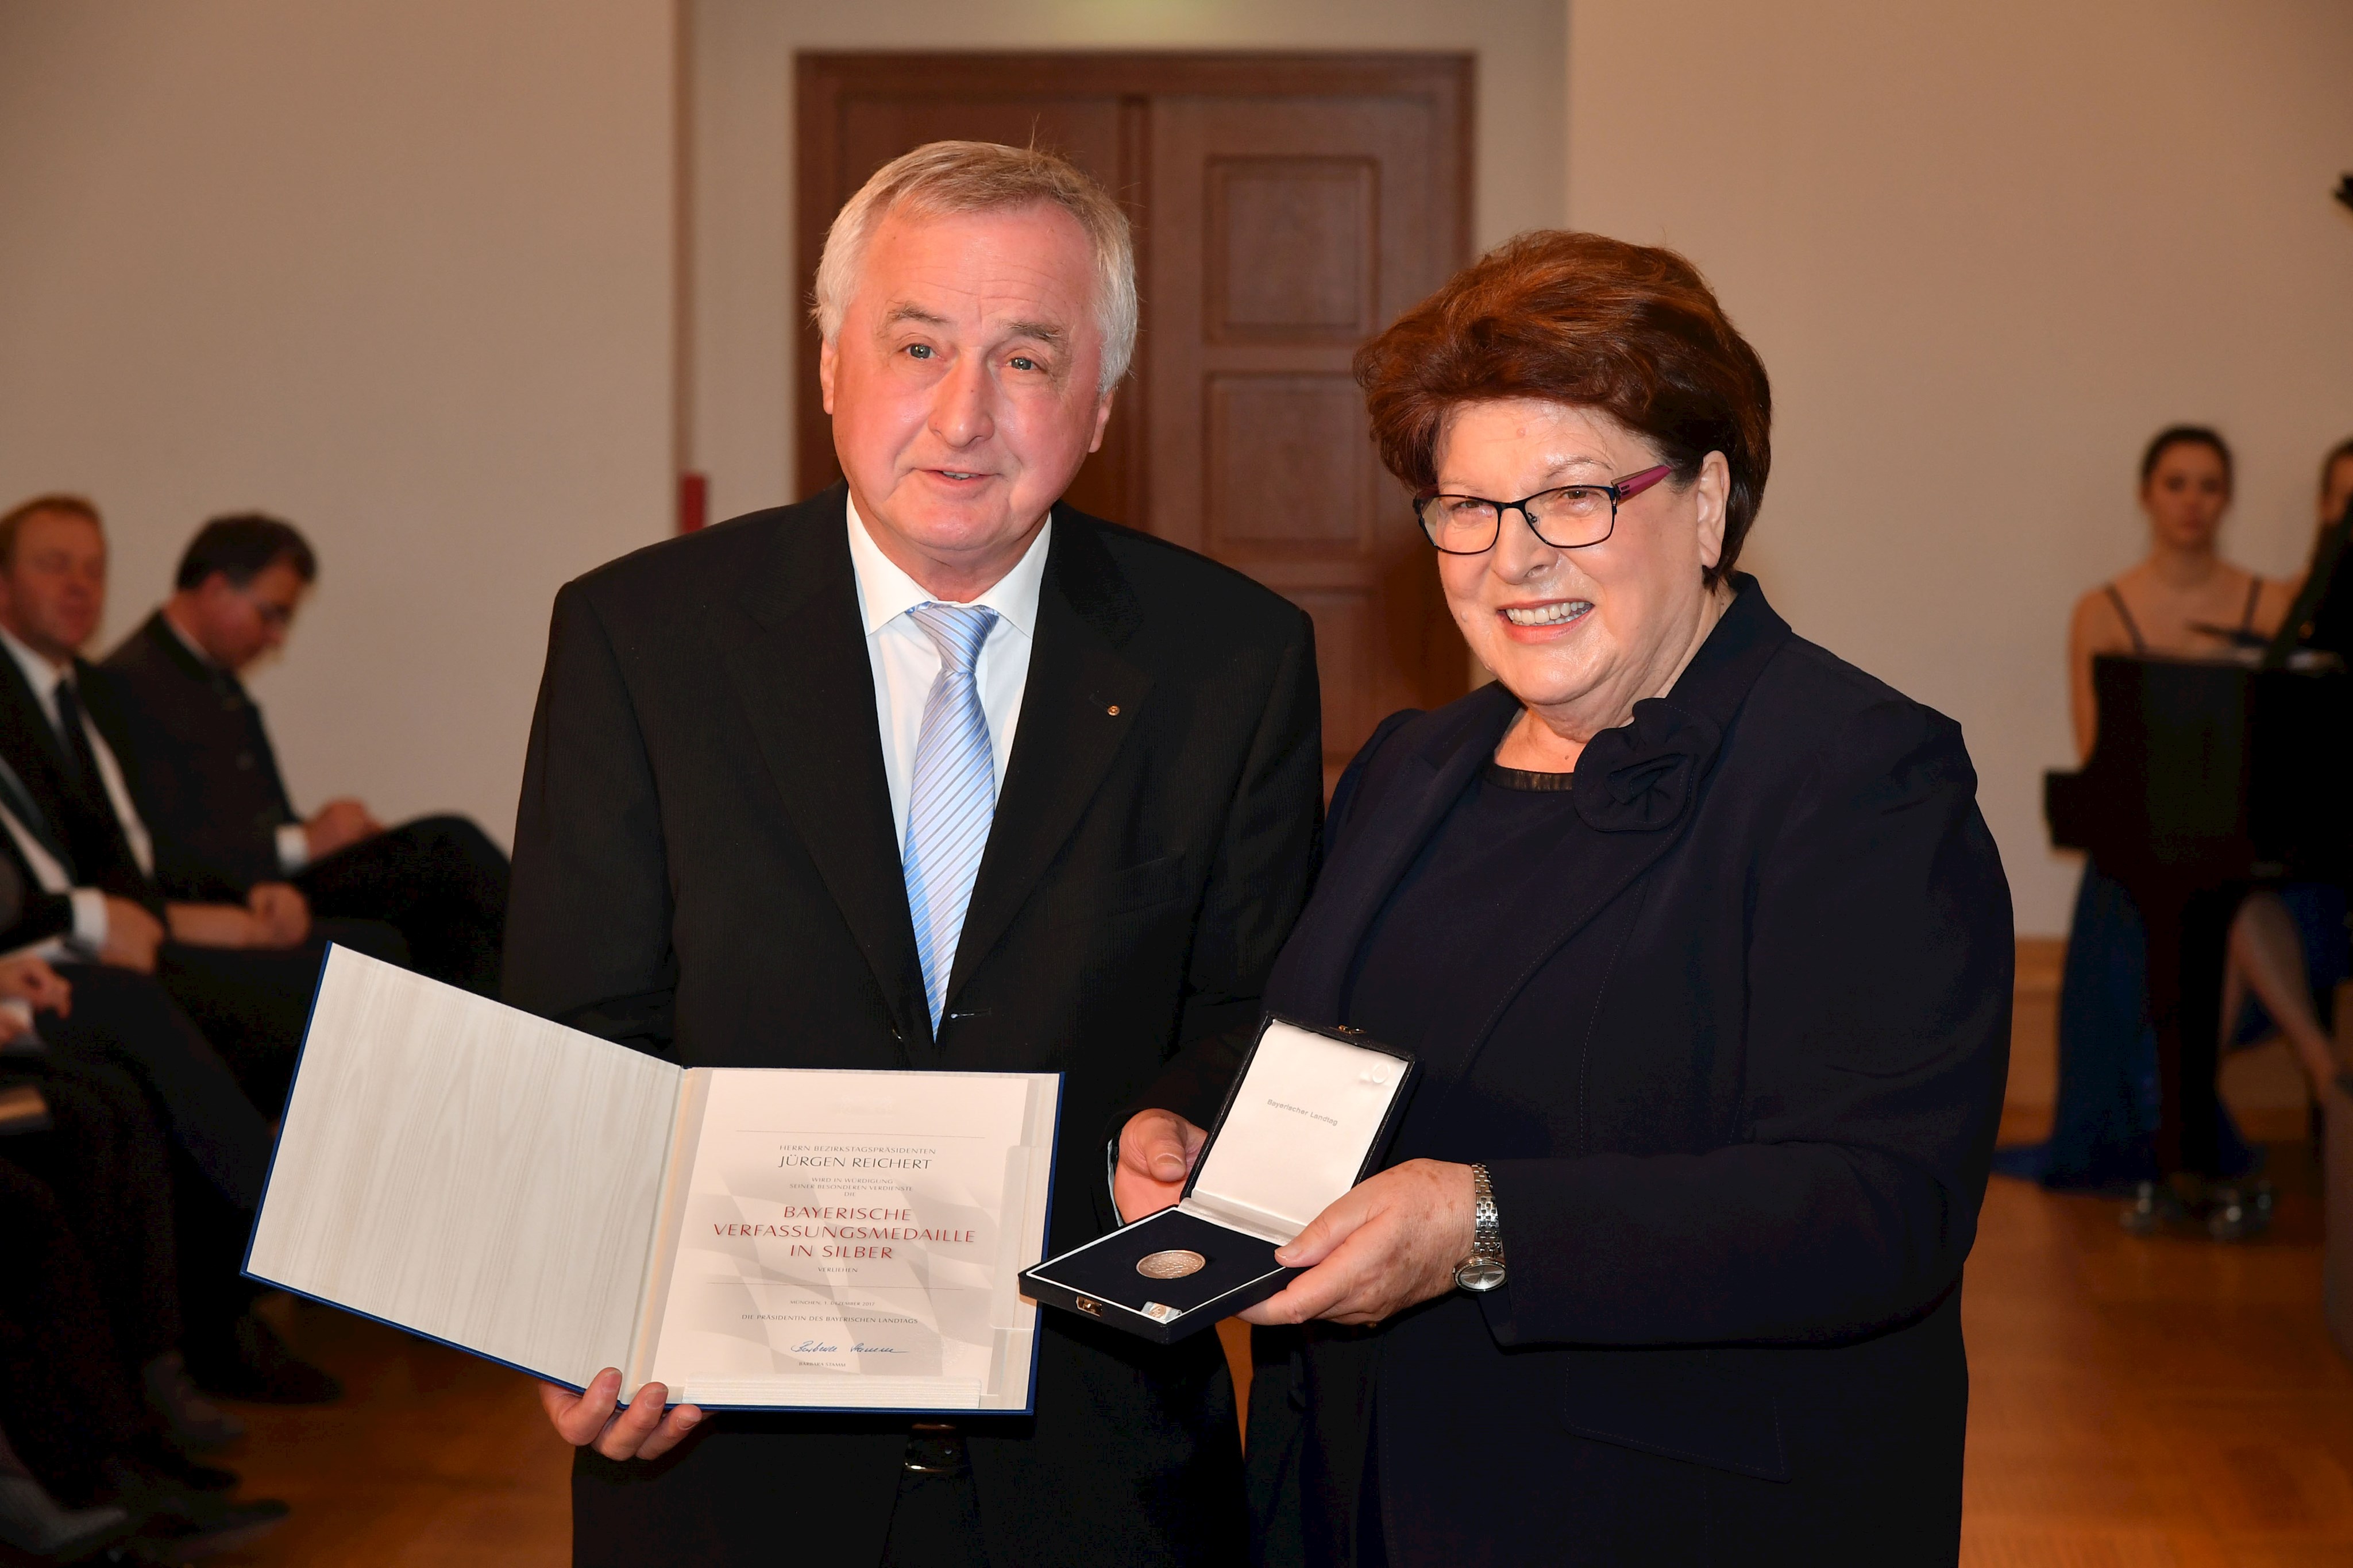 Bezirkstagspräsident Jürgen Reichert mit der Bayerischen Verfassungsmedaille in Silber geehrt